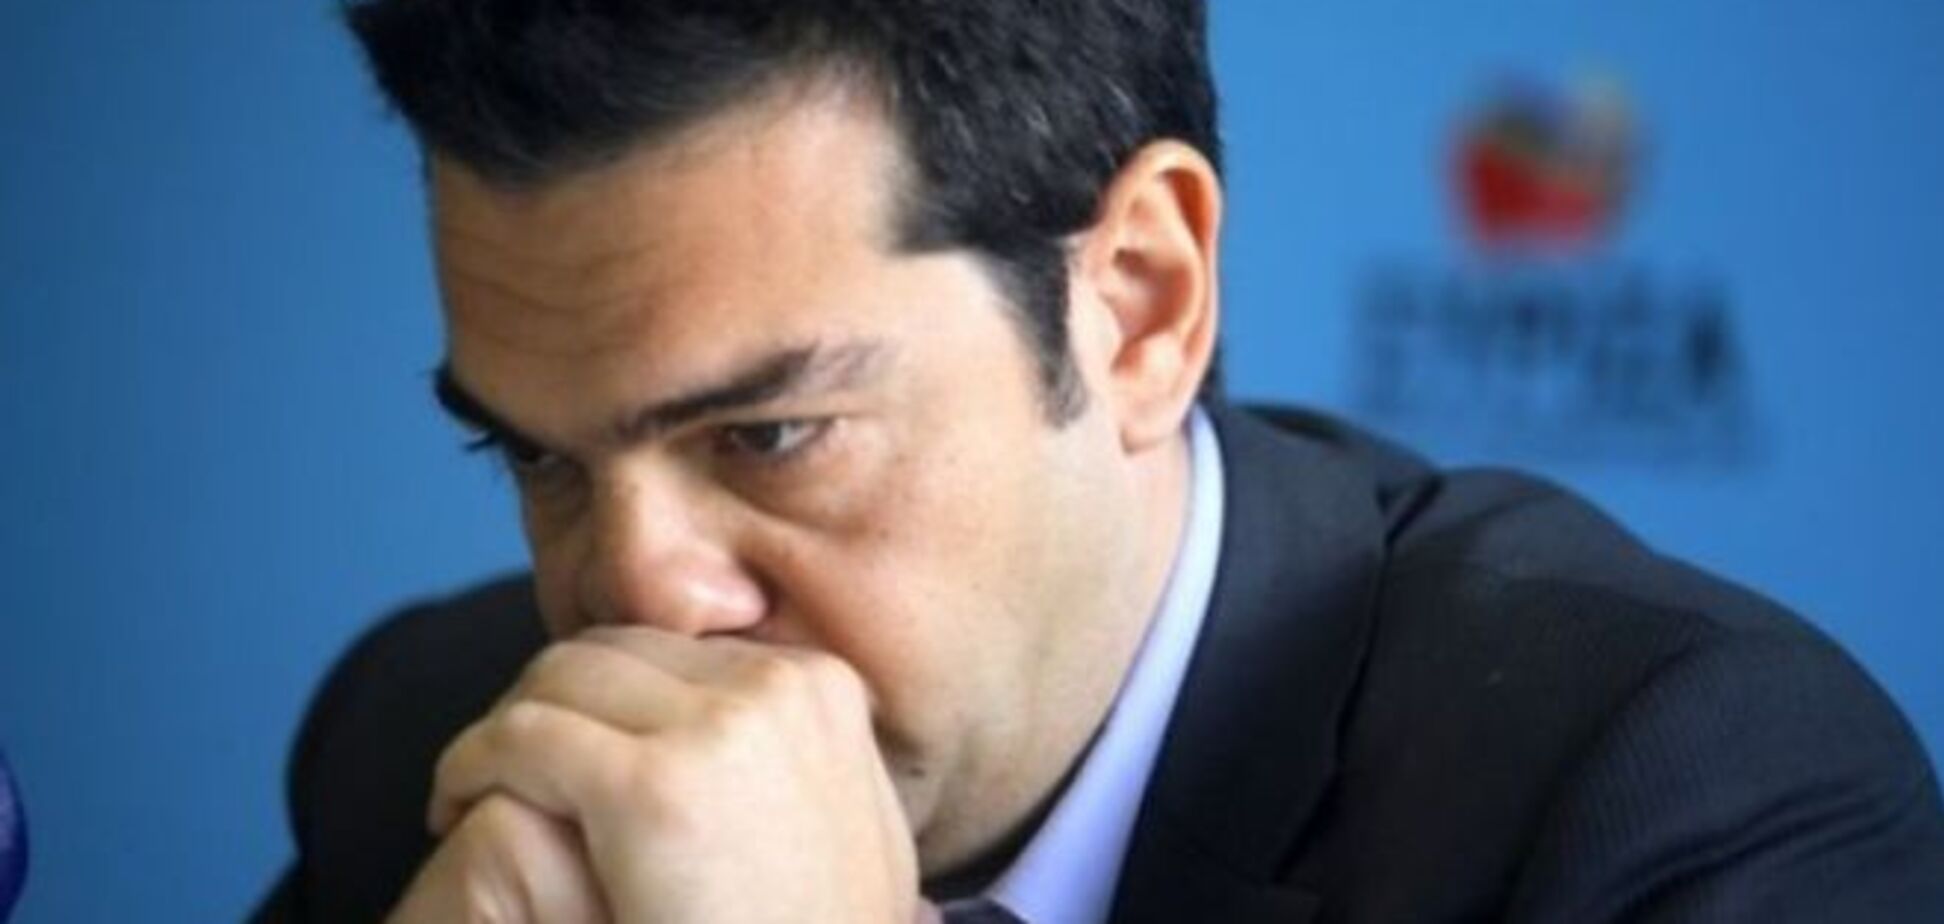 Ще крок до дефолту: прем'єр Греції не переконав кредиторів